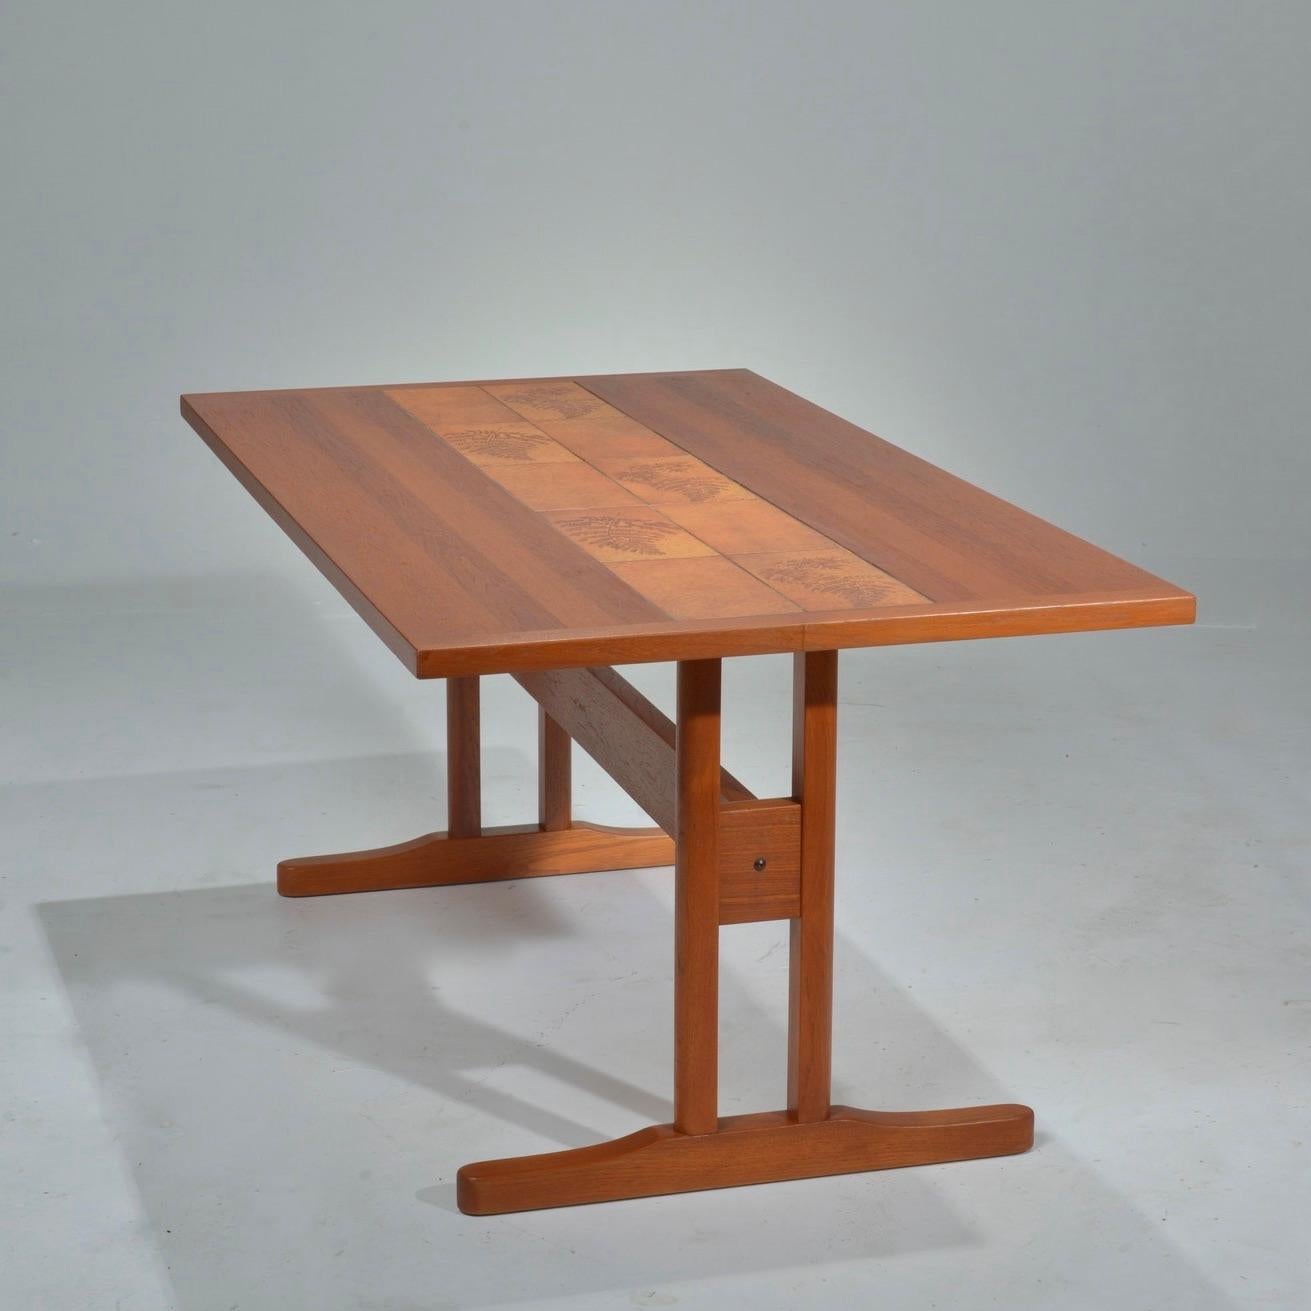 Il s'agit d'une belle table de bureau ou de table à manger en teck incrusté de carreaux. Elle est en excellent état vintage.